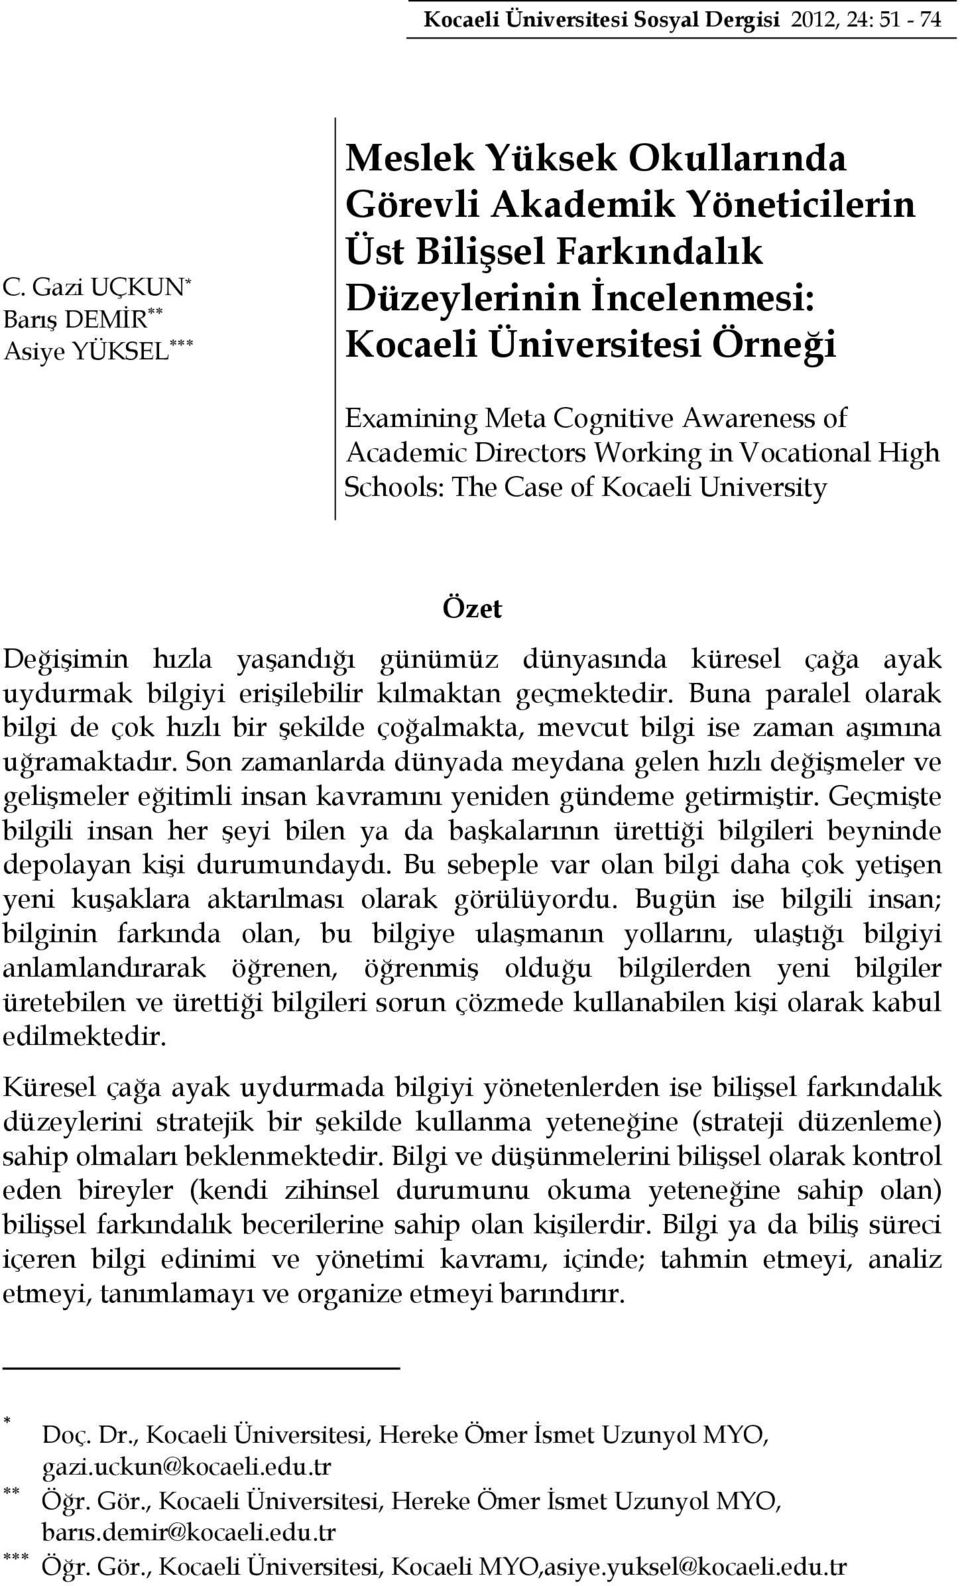 Awareness of Academic Directors Working in Vocational High Schools: The Case of Kocaeli University Özet Değişimin hızla yaşandığı günümüz dünyasında küresel çağa ayak uydurmak bilgiyi erişilebilir